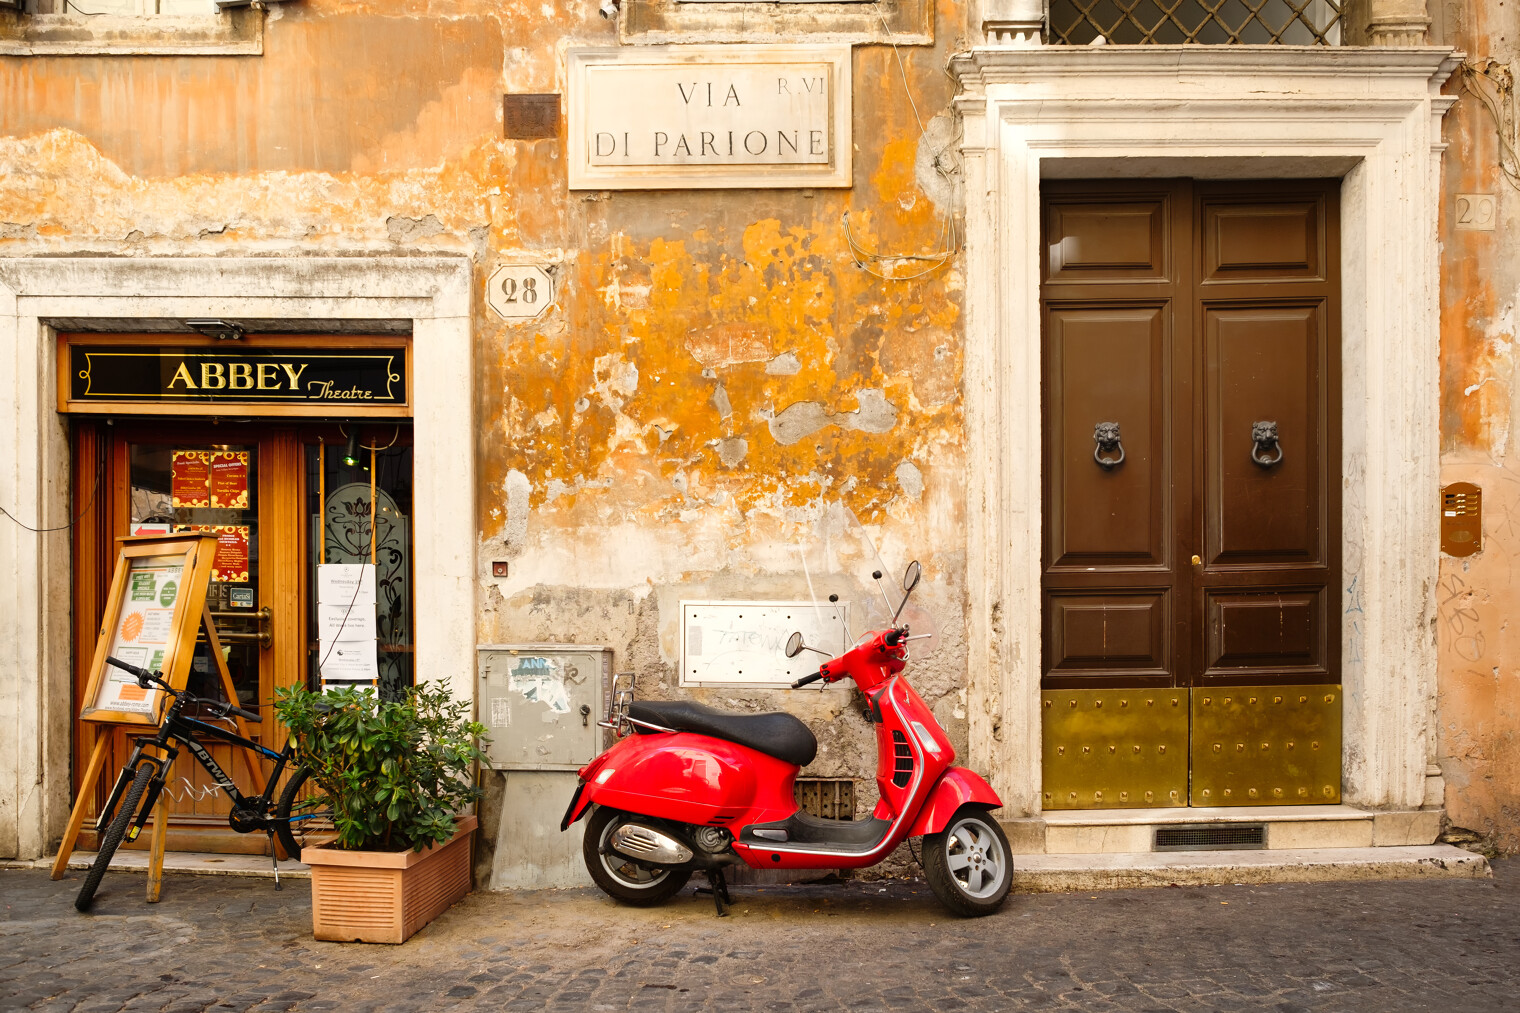 Une rue typique italienne avec un scooter rouge